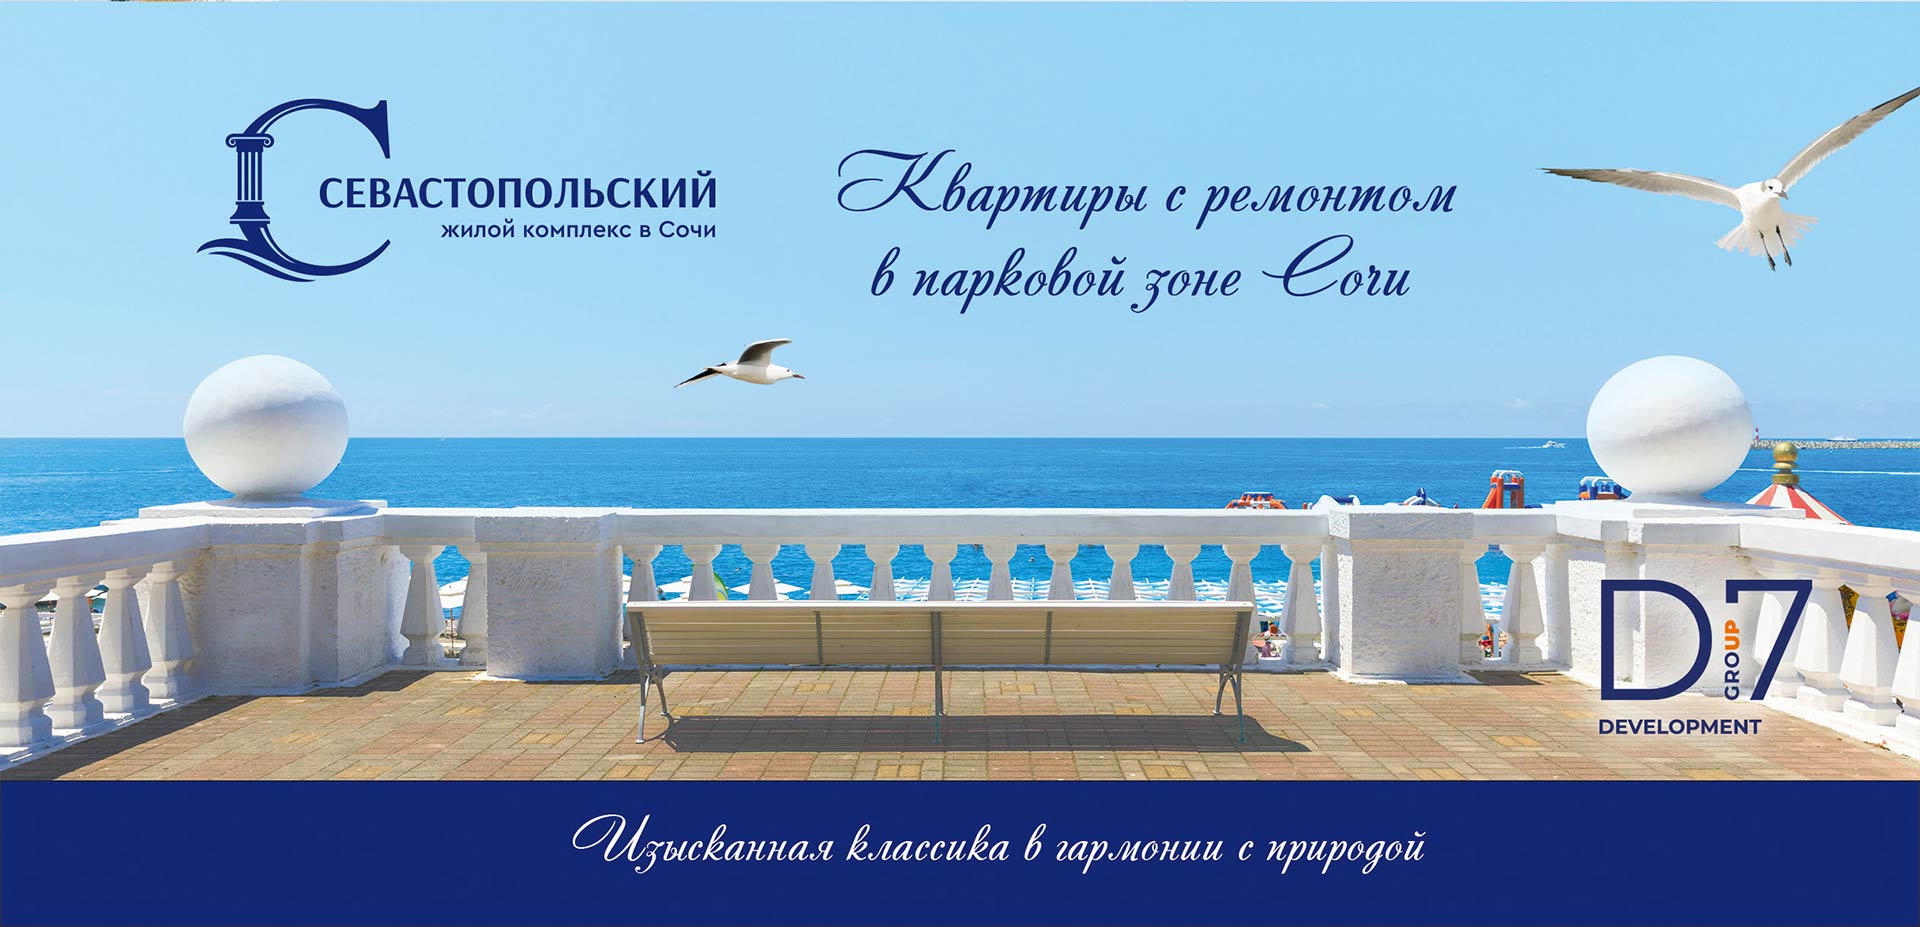 Логотип жилищного комплекса «Севастопольский»